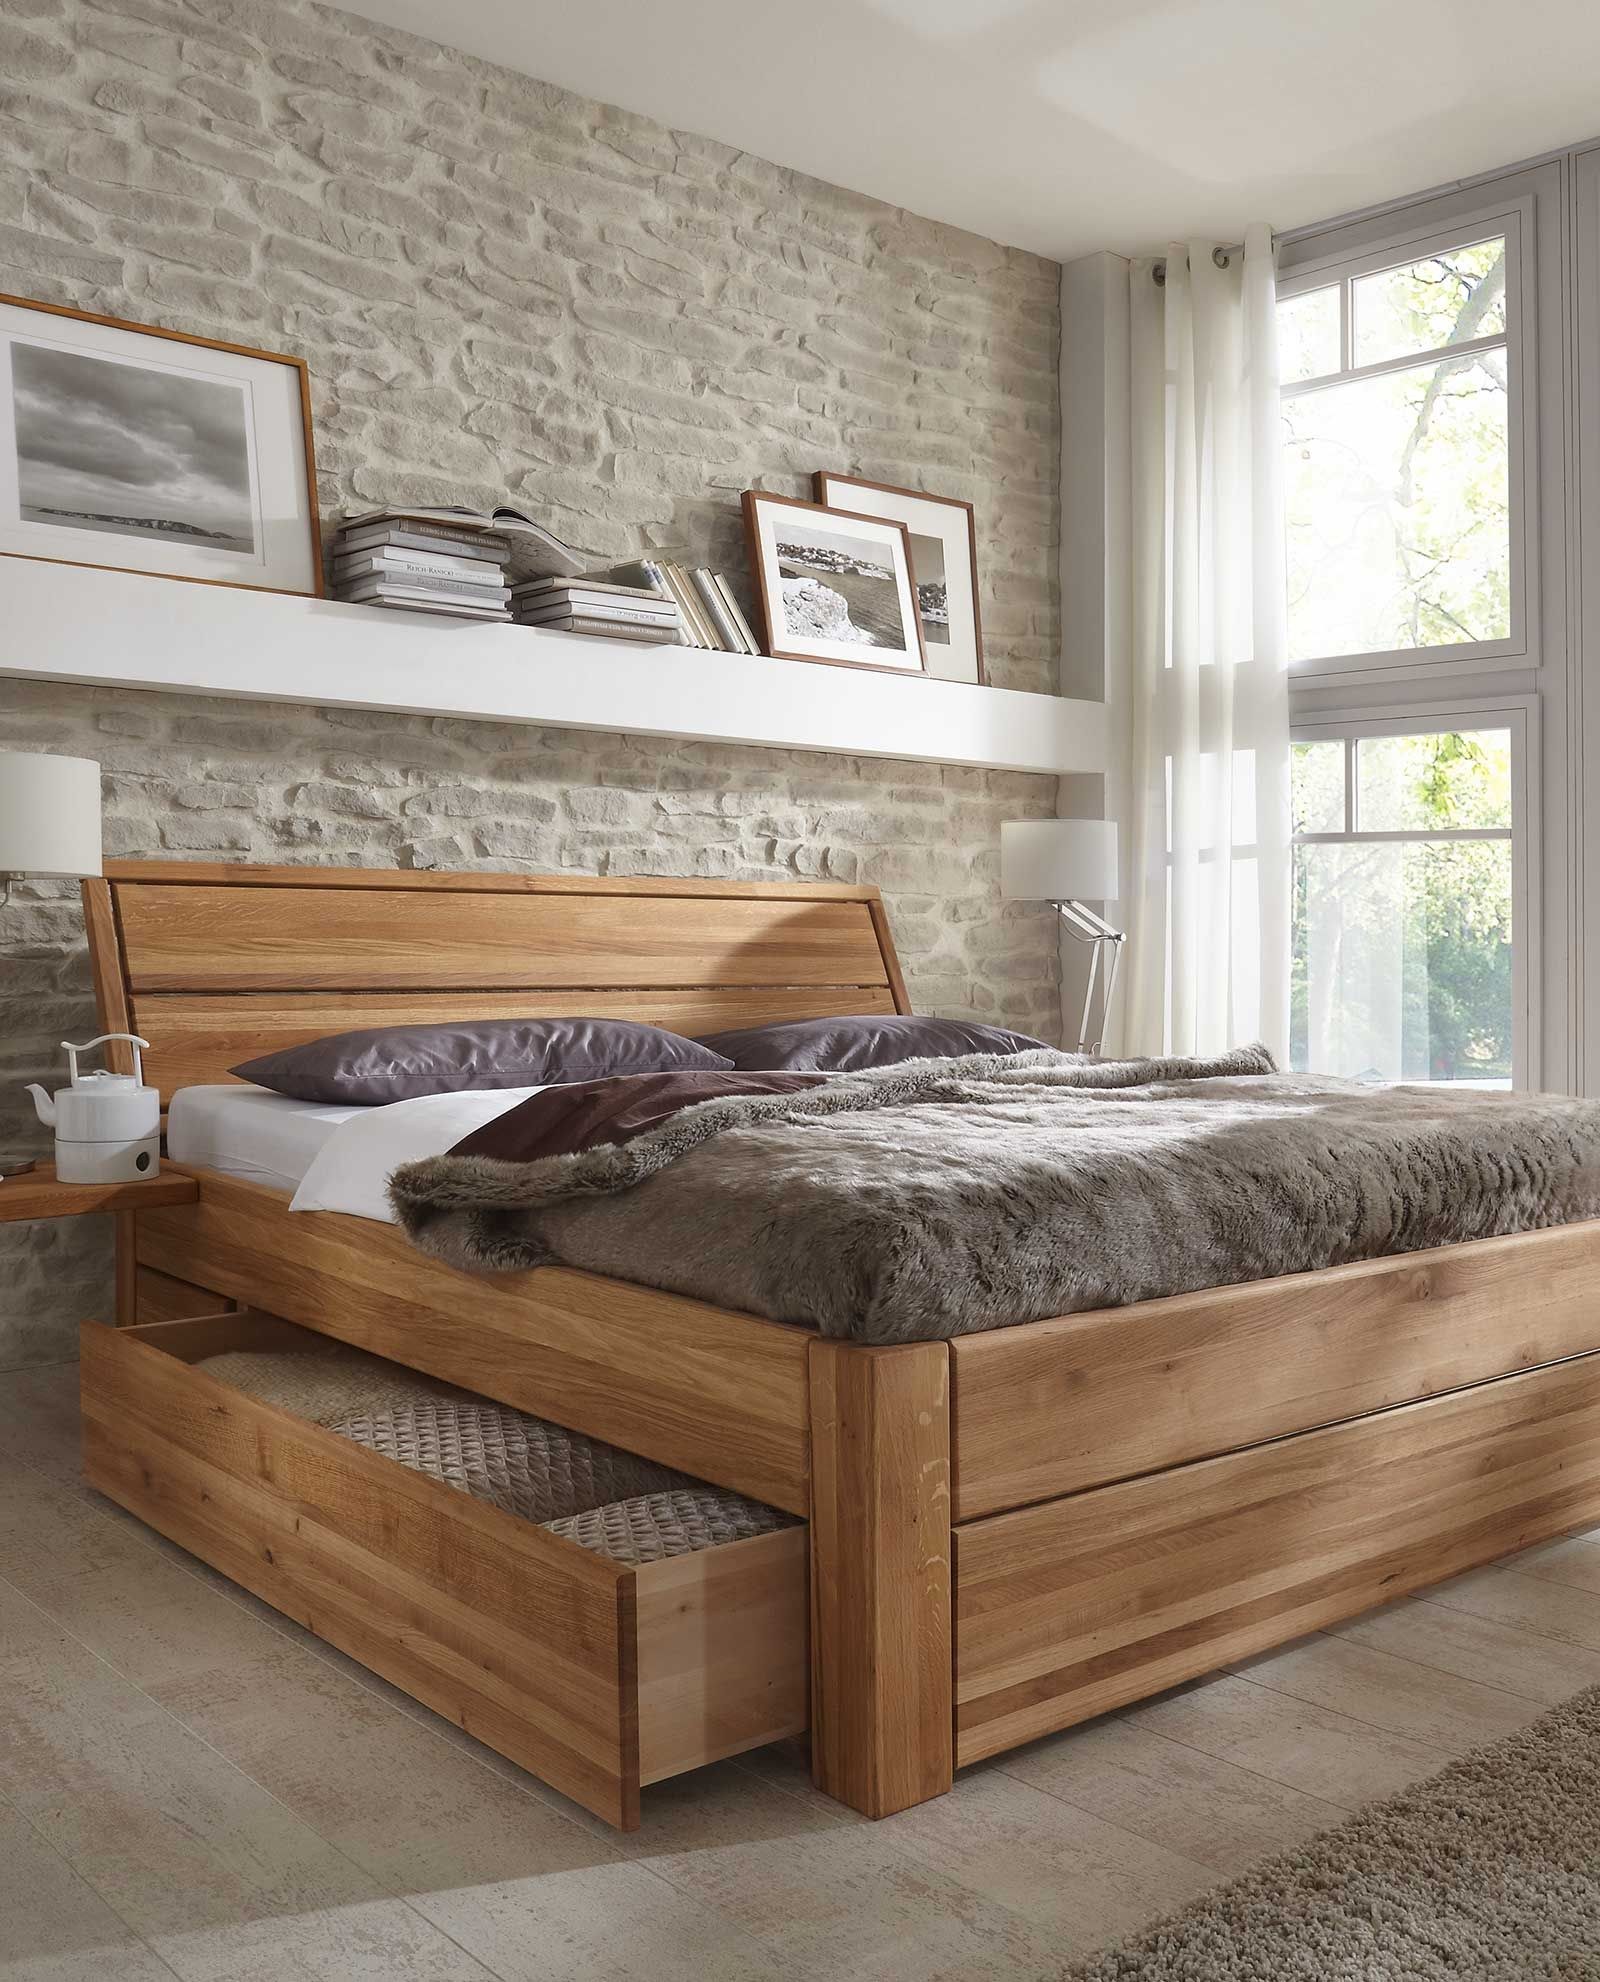 Мебель из дерева кровати